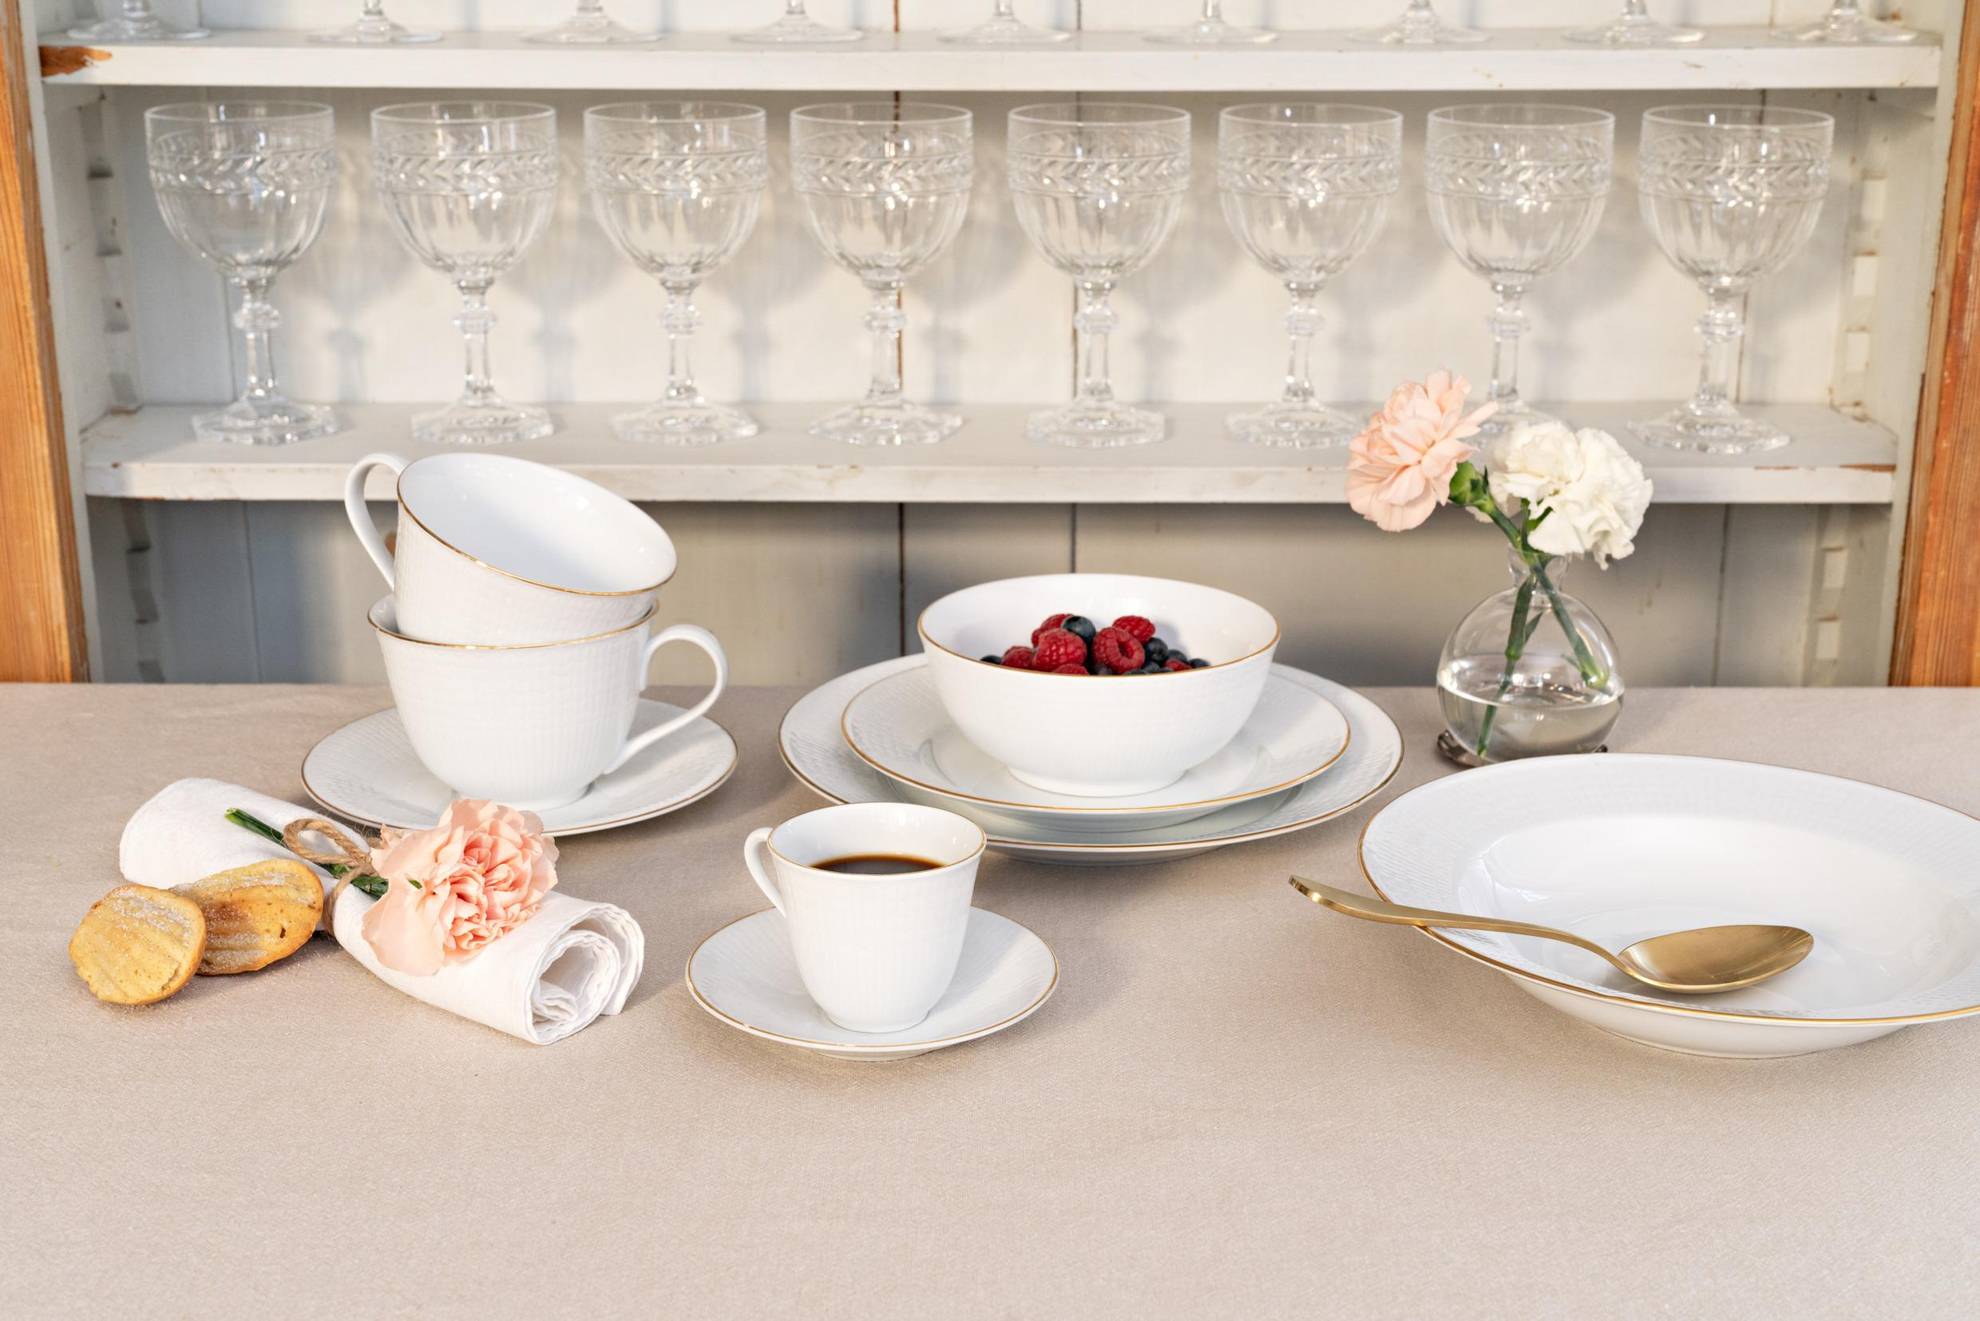 Un service appelé "Swedish Grace Gala" est posé sur une table. Des assiettes de différentes tailles, un bol avec des baies et une tasse de café. Derrière, il y a une étagère avec des verres à vin.